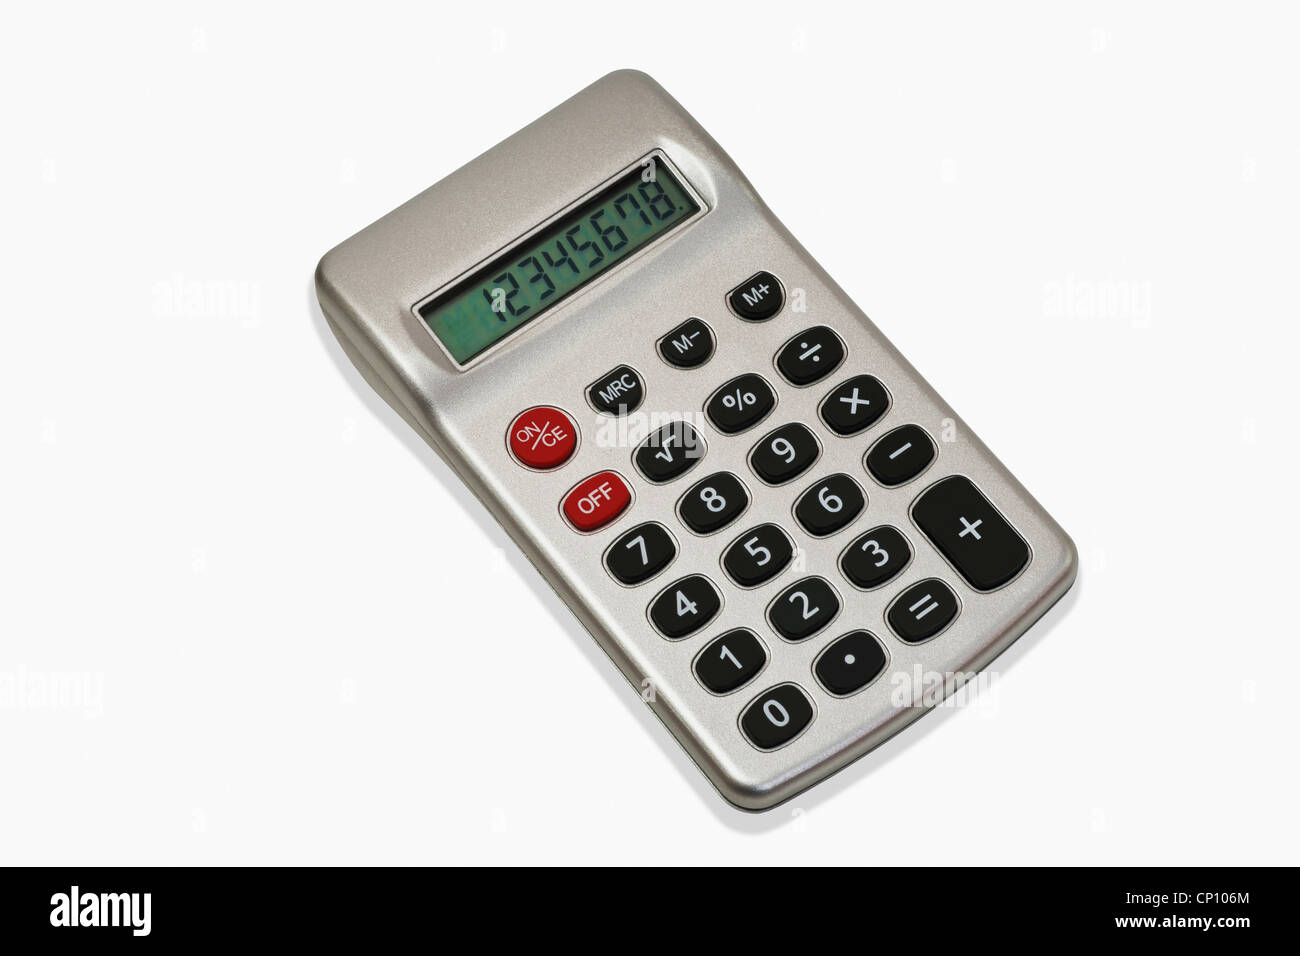 Detailansicht eines Taschenrechners | Detail photo of a pocket calculator Stock Photo